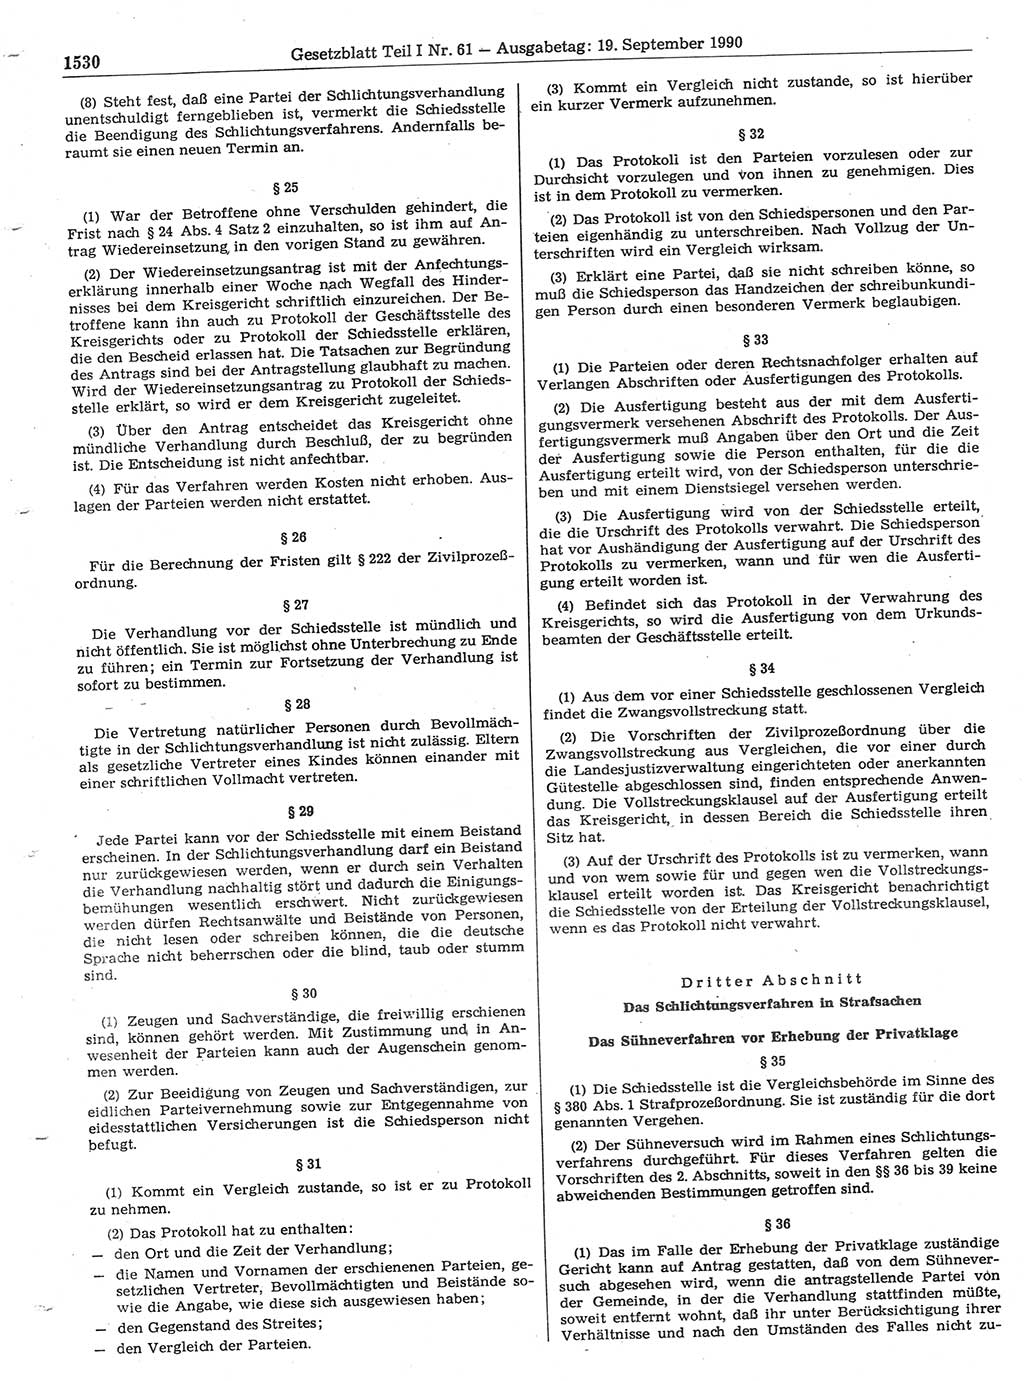 Gesetzblatt (GBl.) der Deutschen Demokratischen Republik (DDR) Teil Ⅰ 1990, Seite 1530 (GBl. DDR Ⅰ 1990, S. 1530)